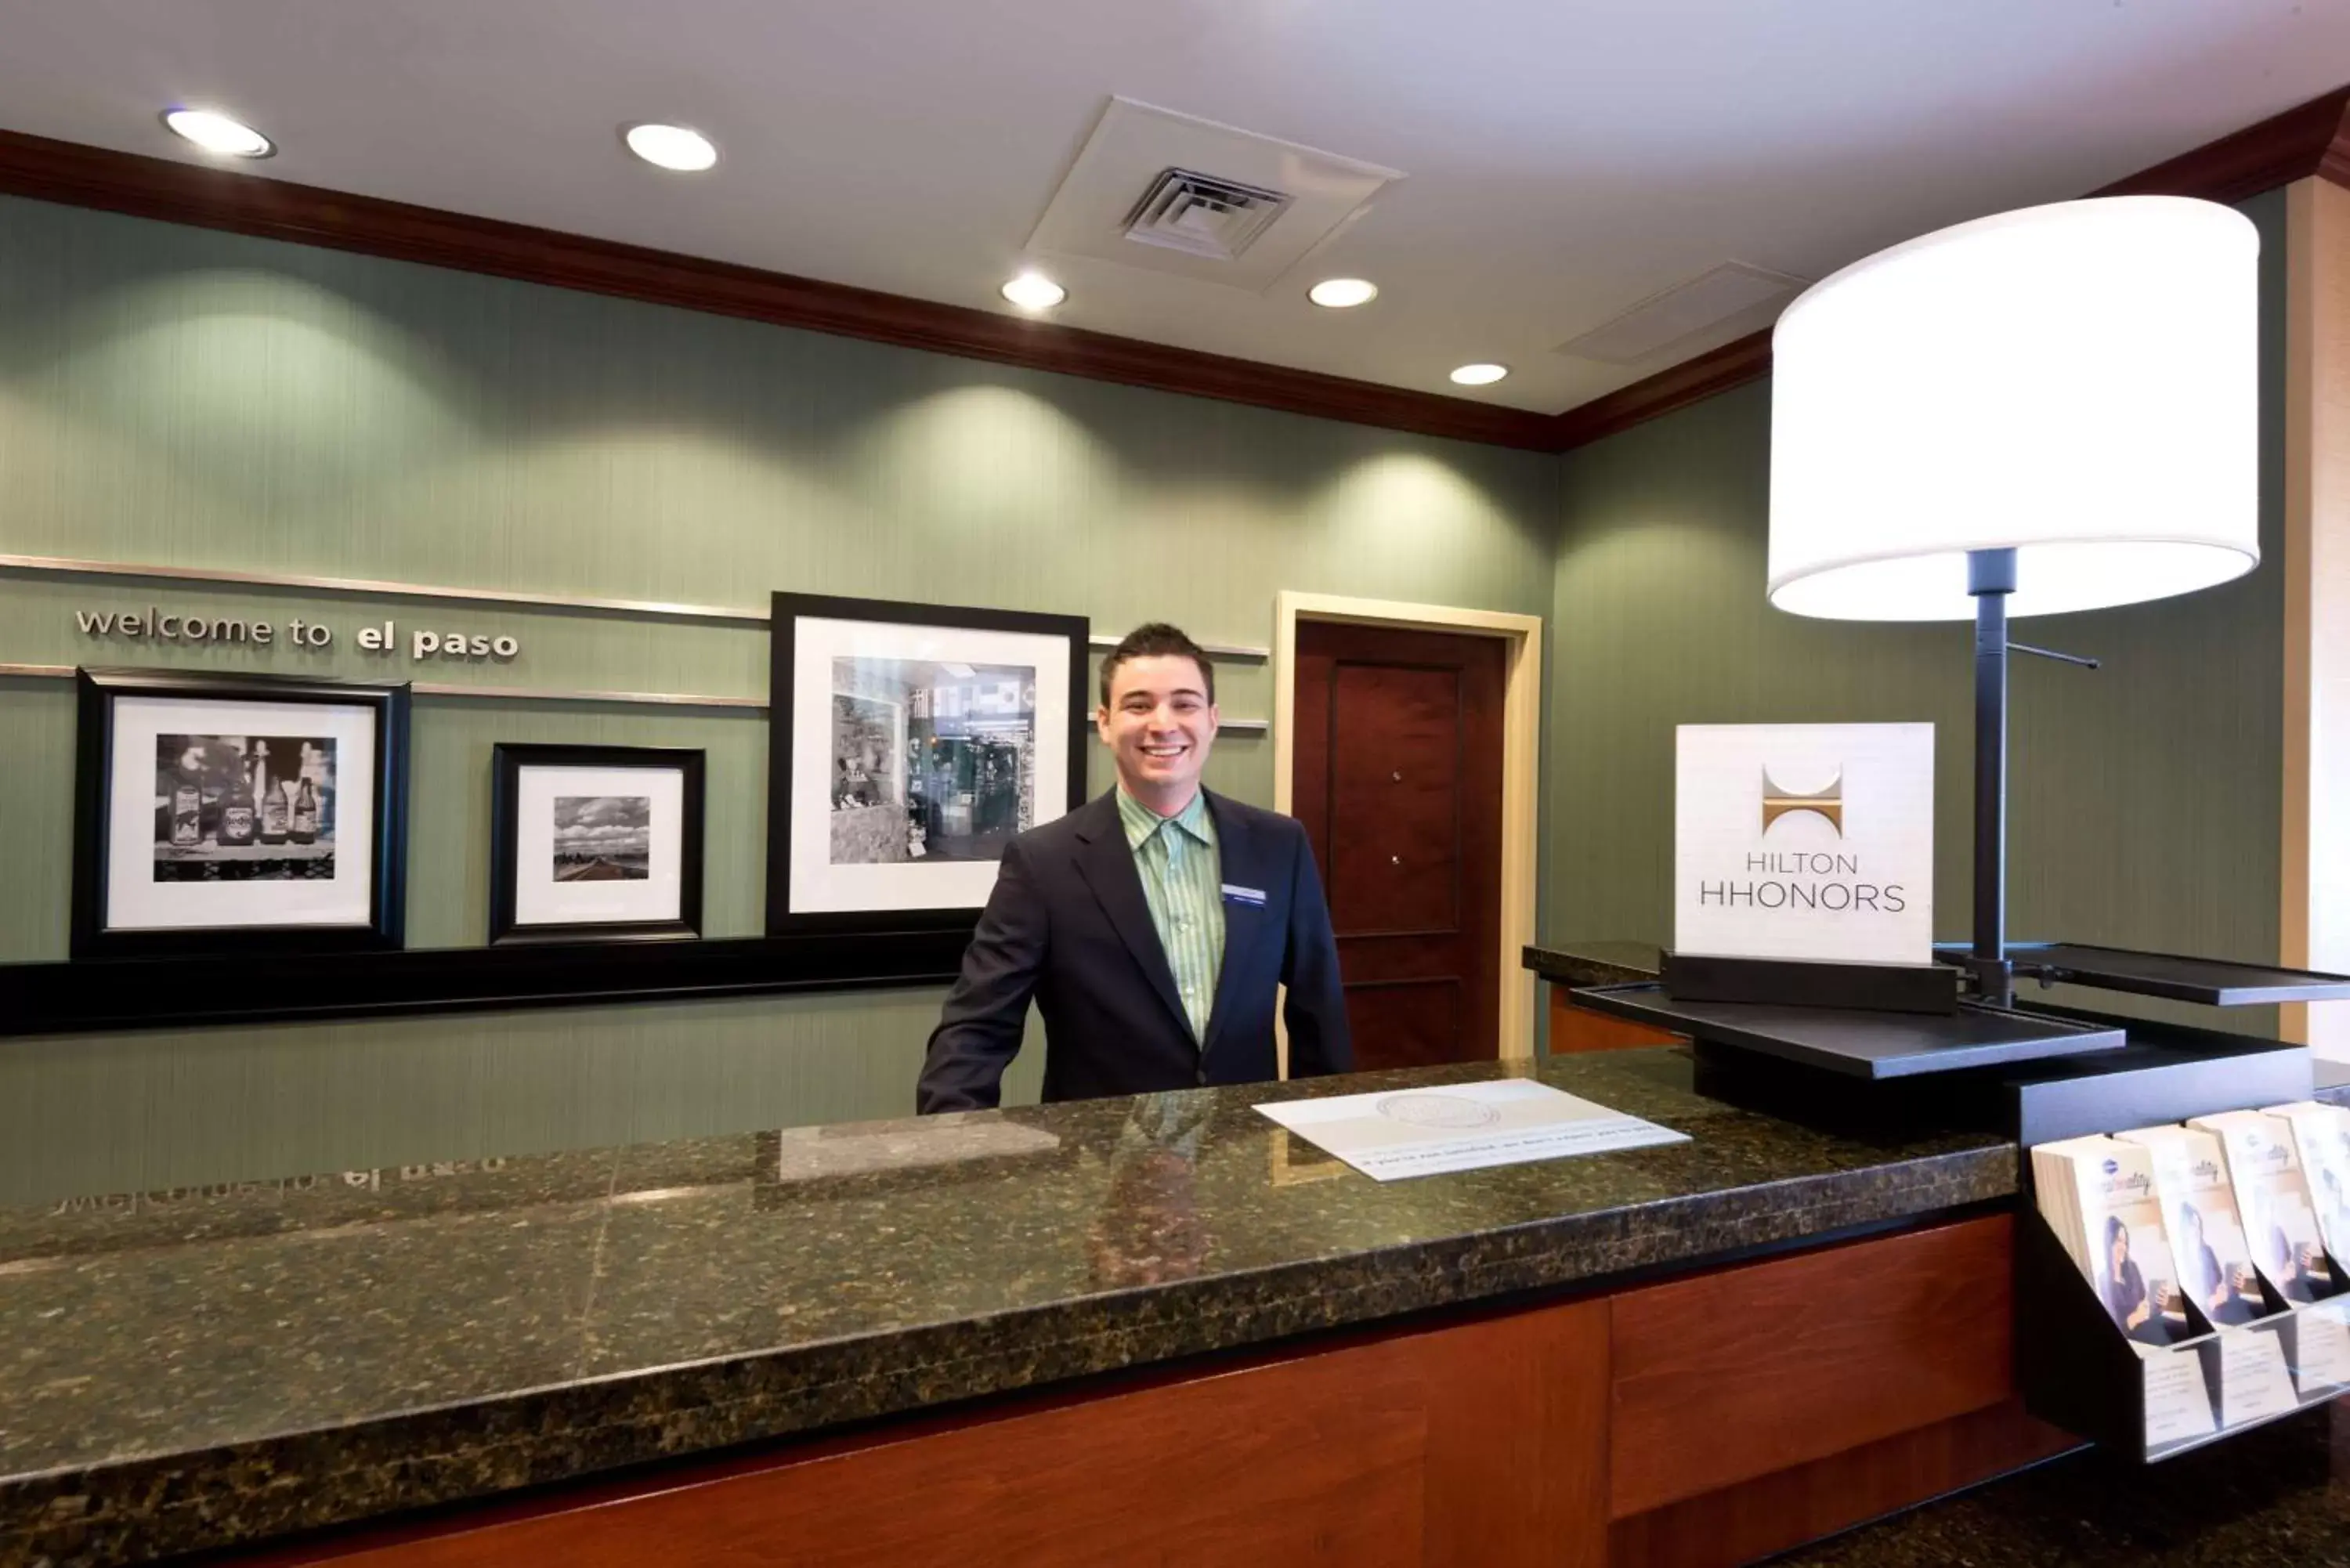 Lobby or reception, Lobby/Reception in Hampton Inn & Suites El Paso West